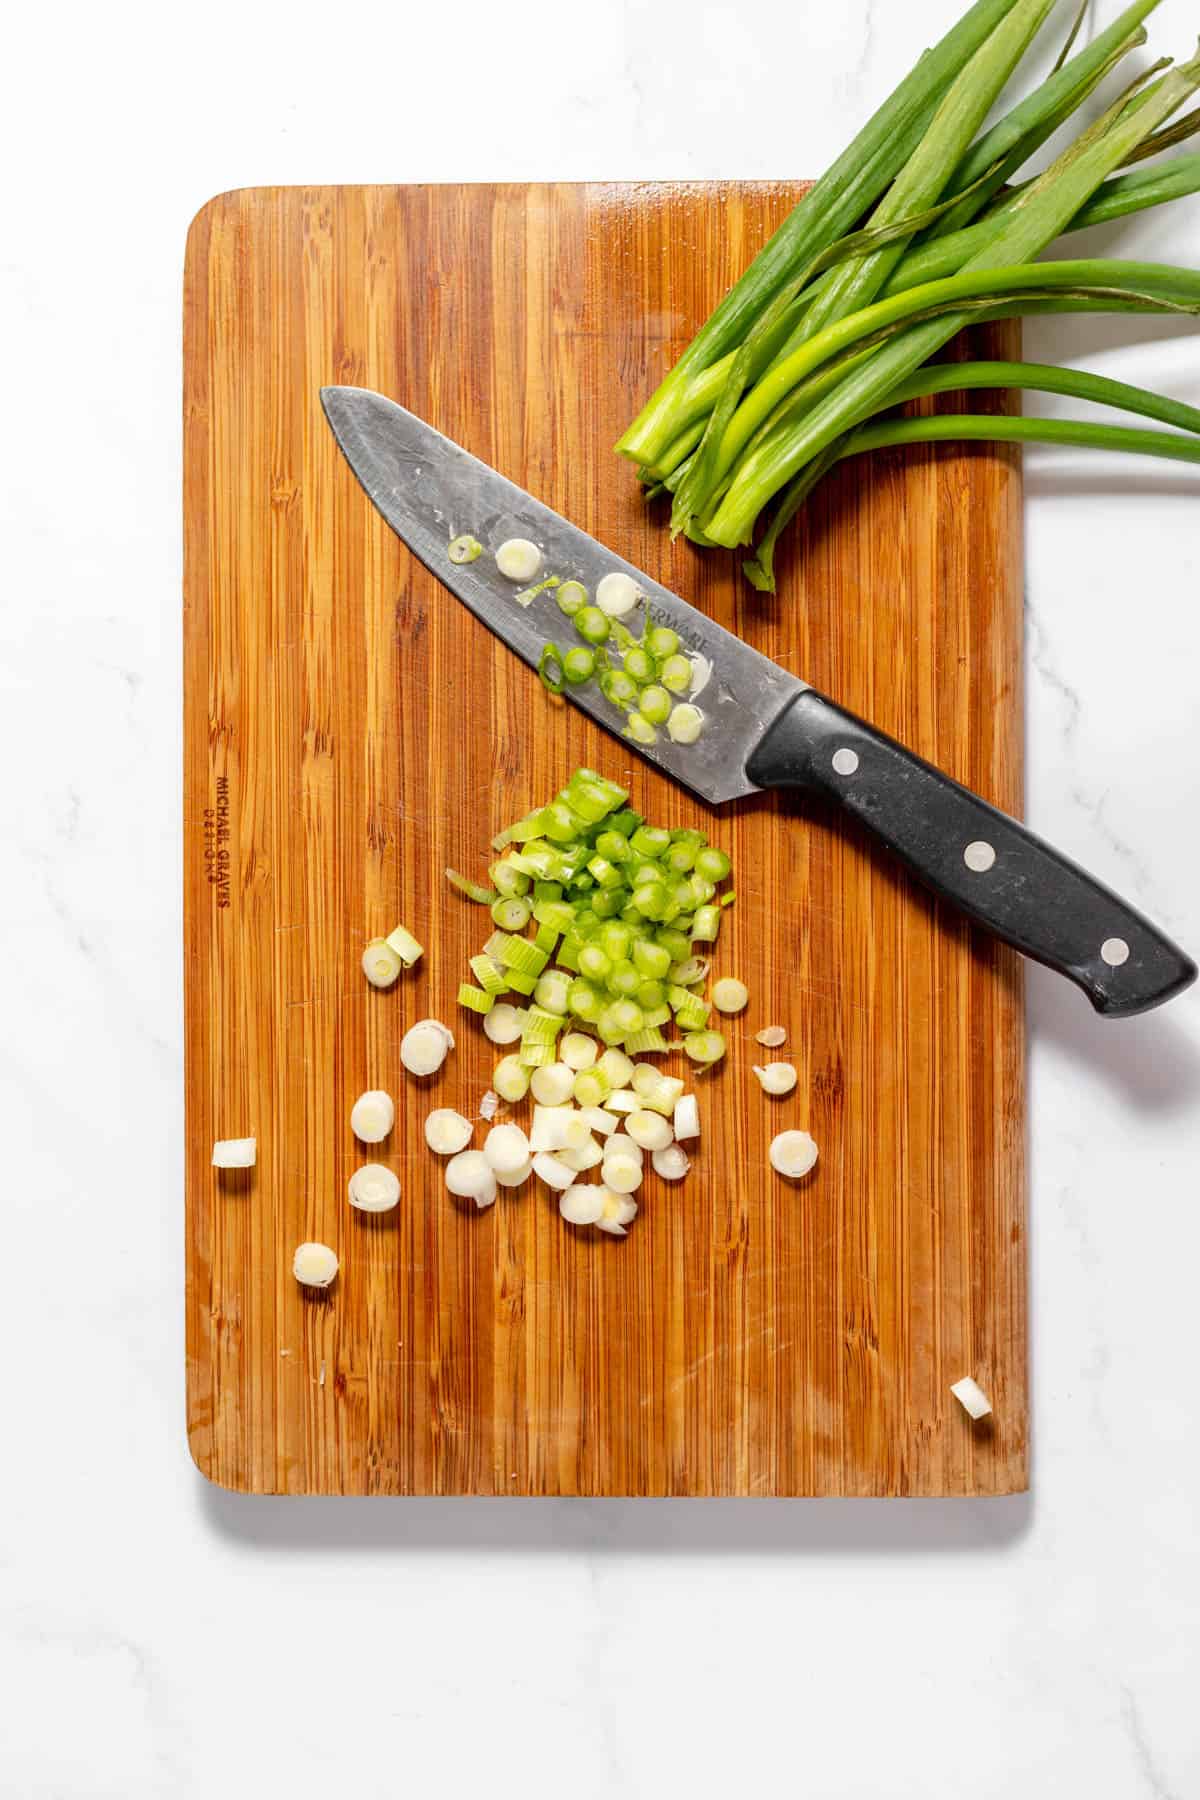 Chopping green onions on a cutting board.